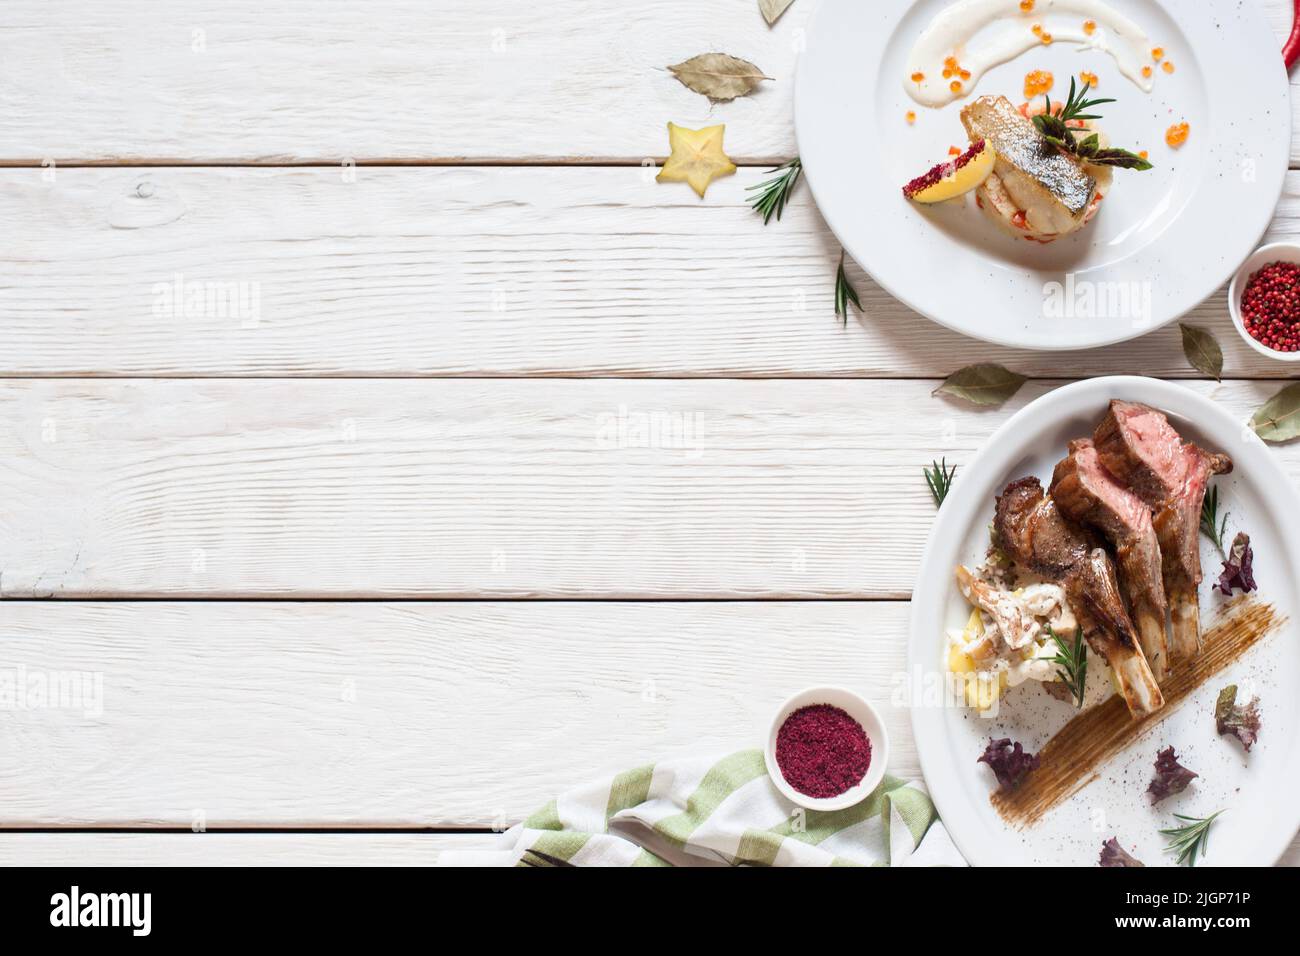 Poisson frit et viande sur une table en bois blanc Banque D'Images